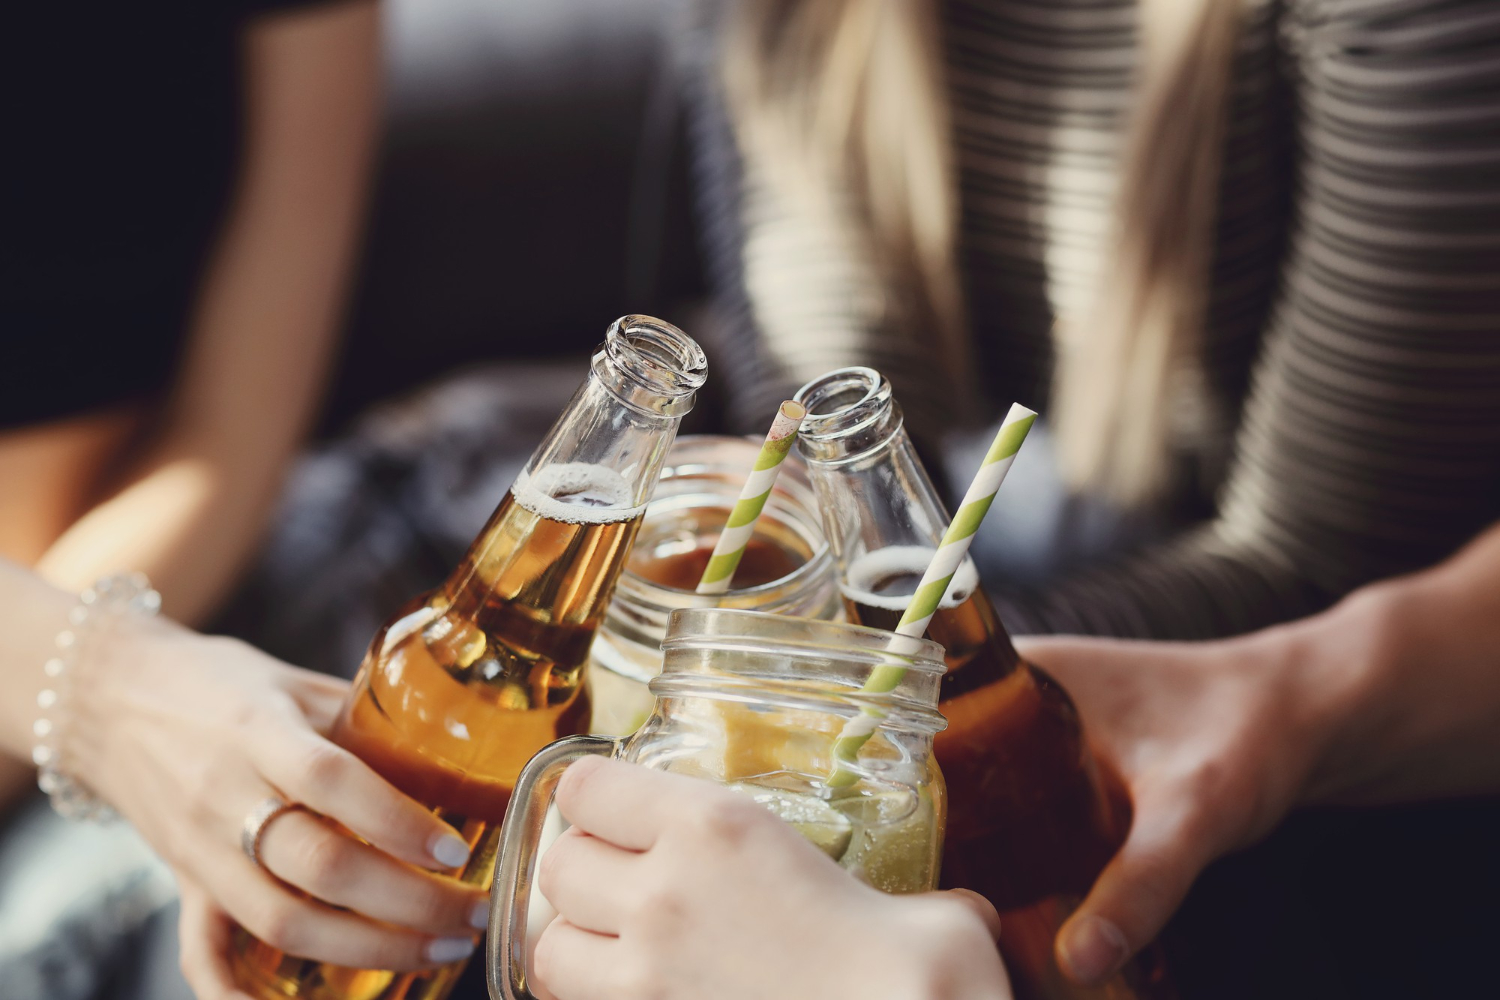 Consumo de alcohol en adolescentes pone en riesgo su desarrollo físico y mental